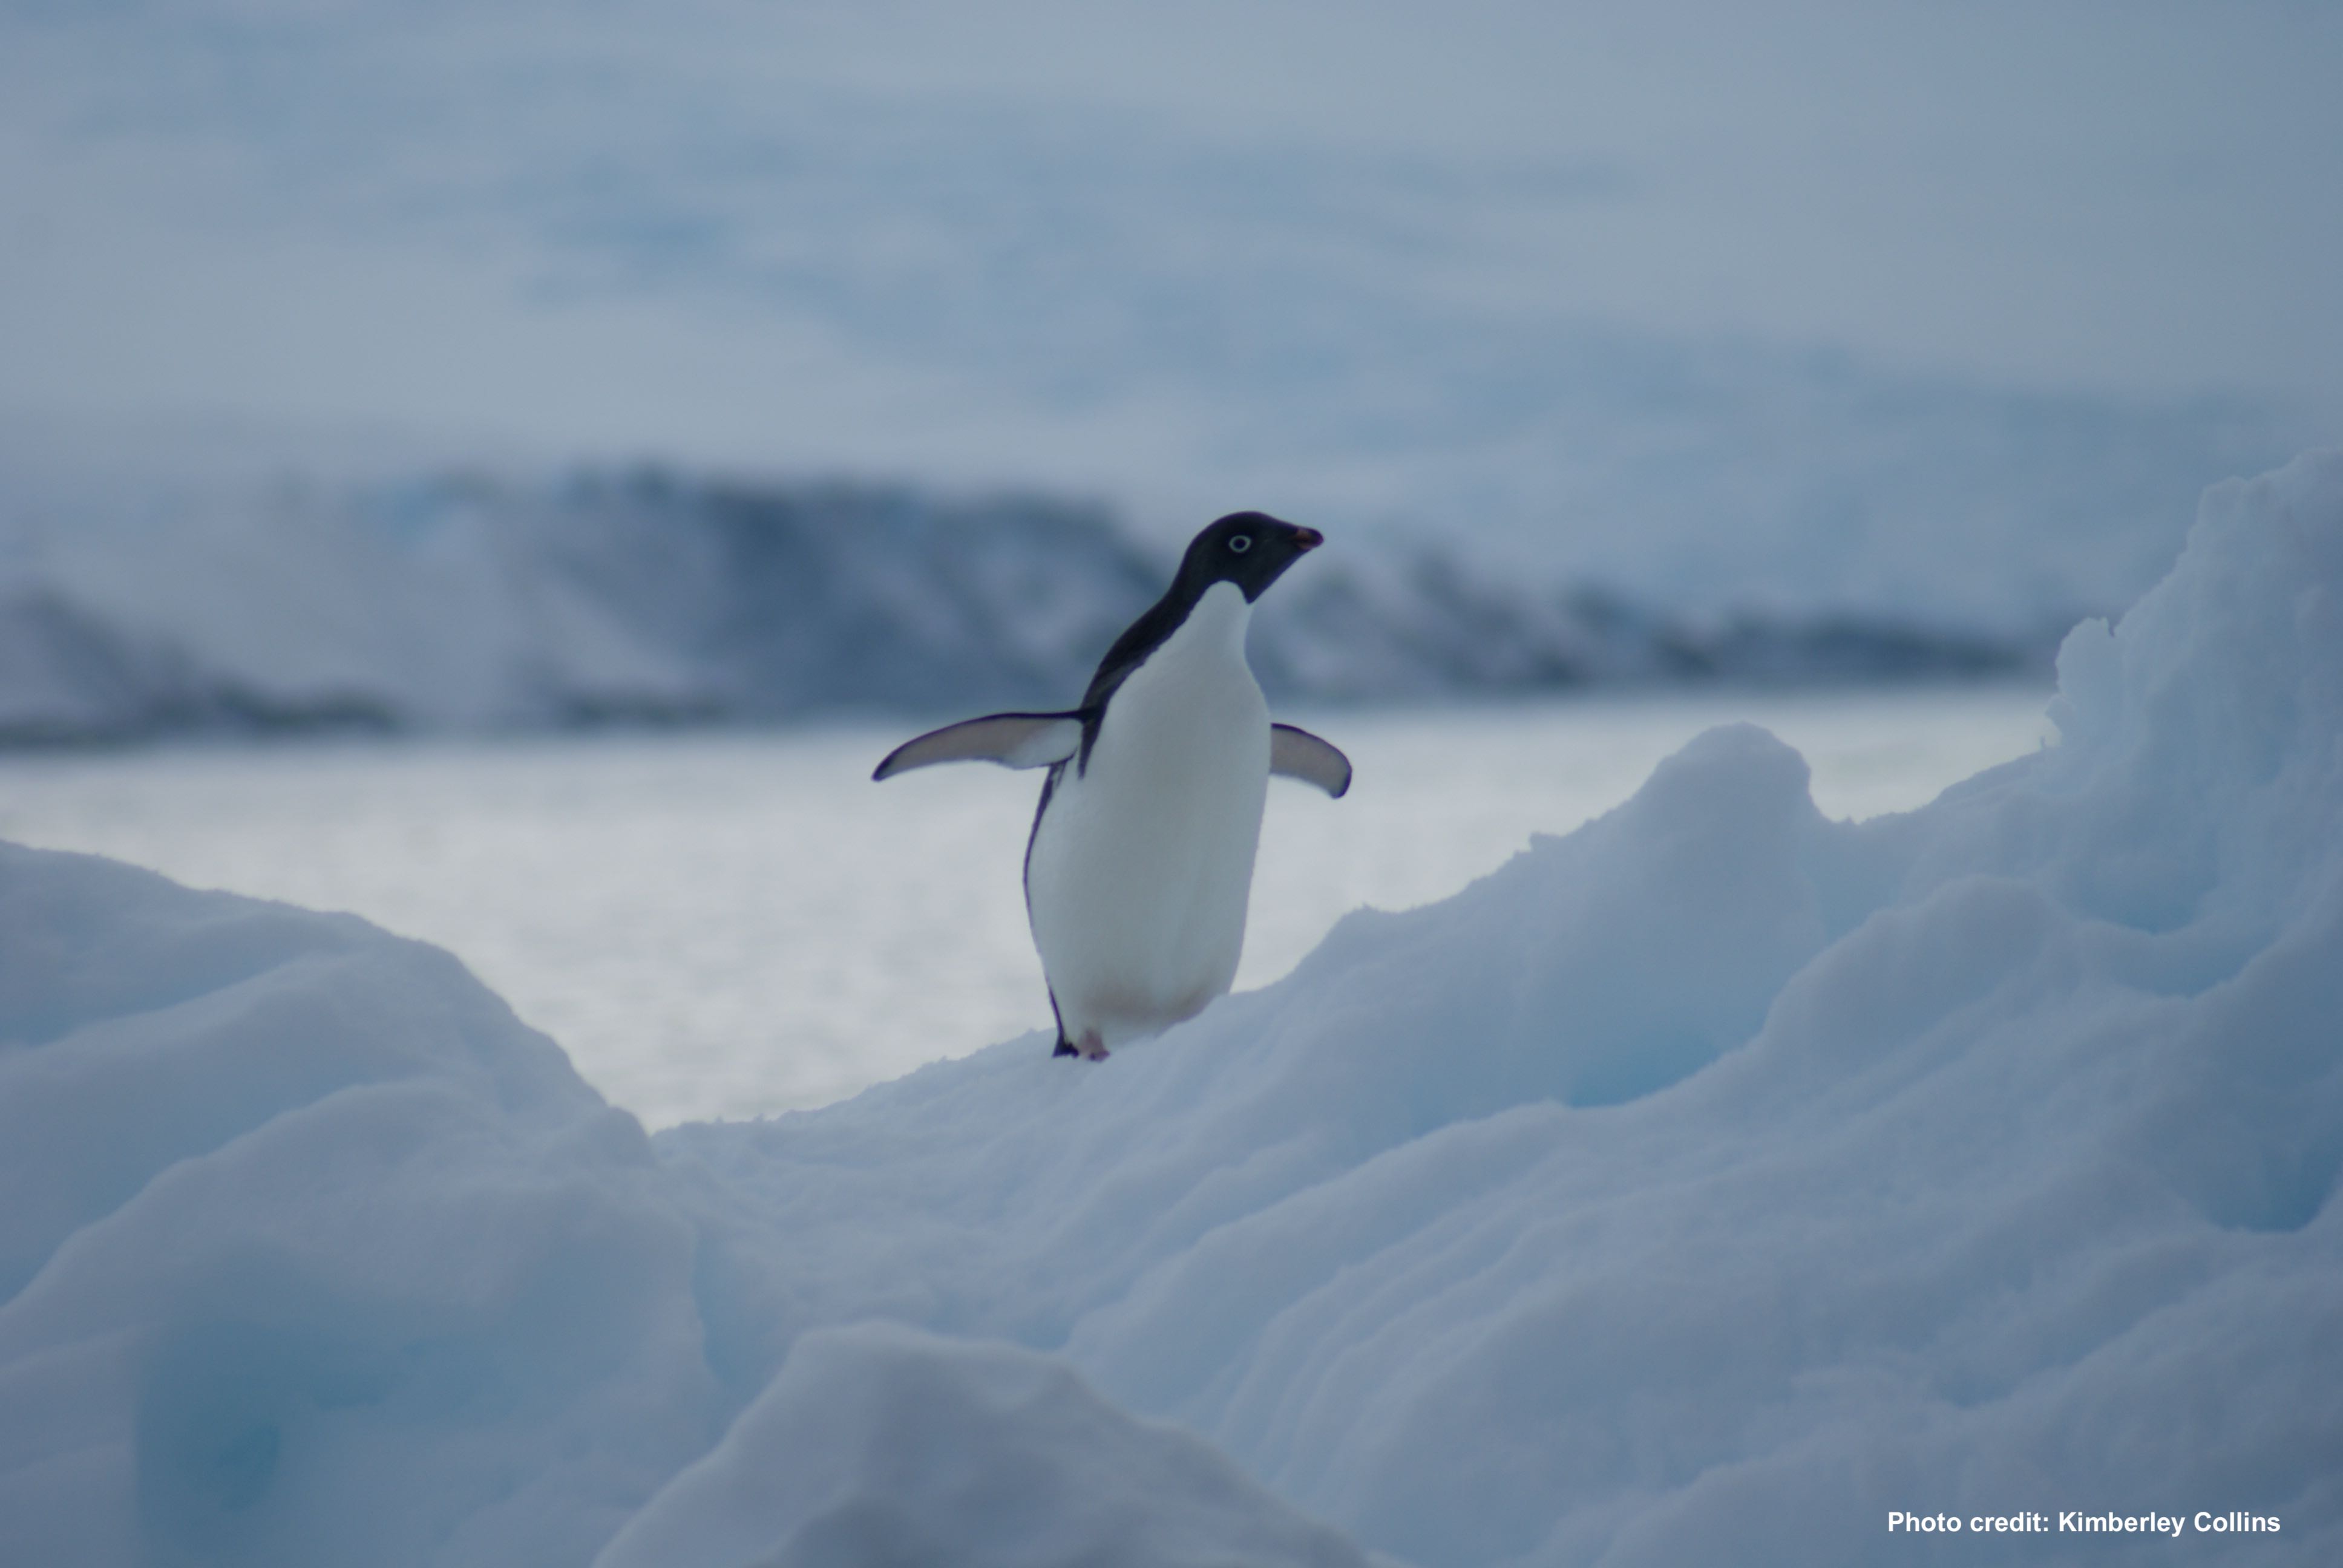 4月25日は世界ペンギンデー 気候変動 エネルギー